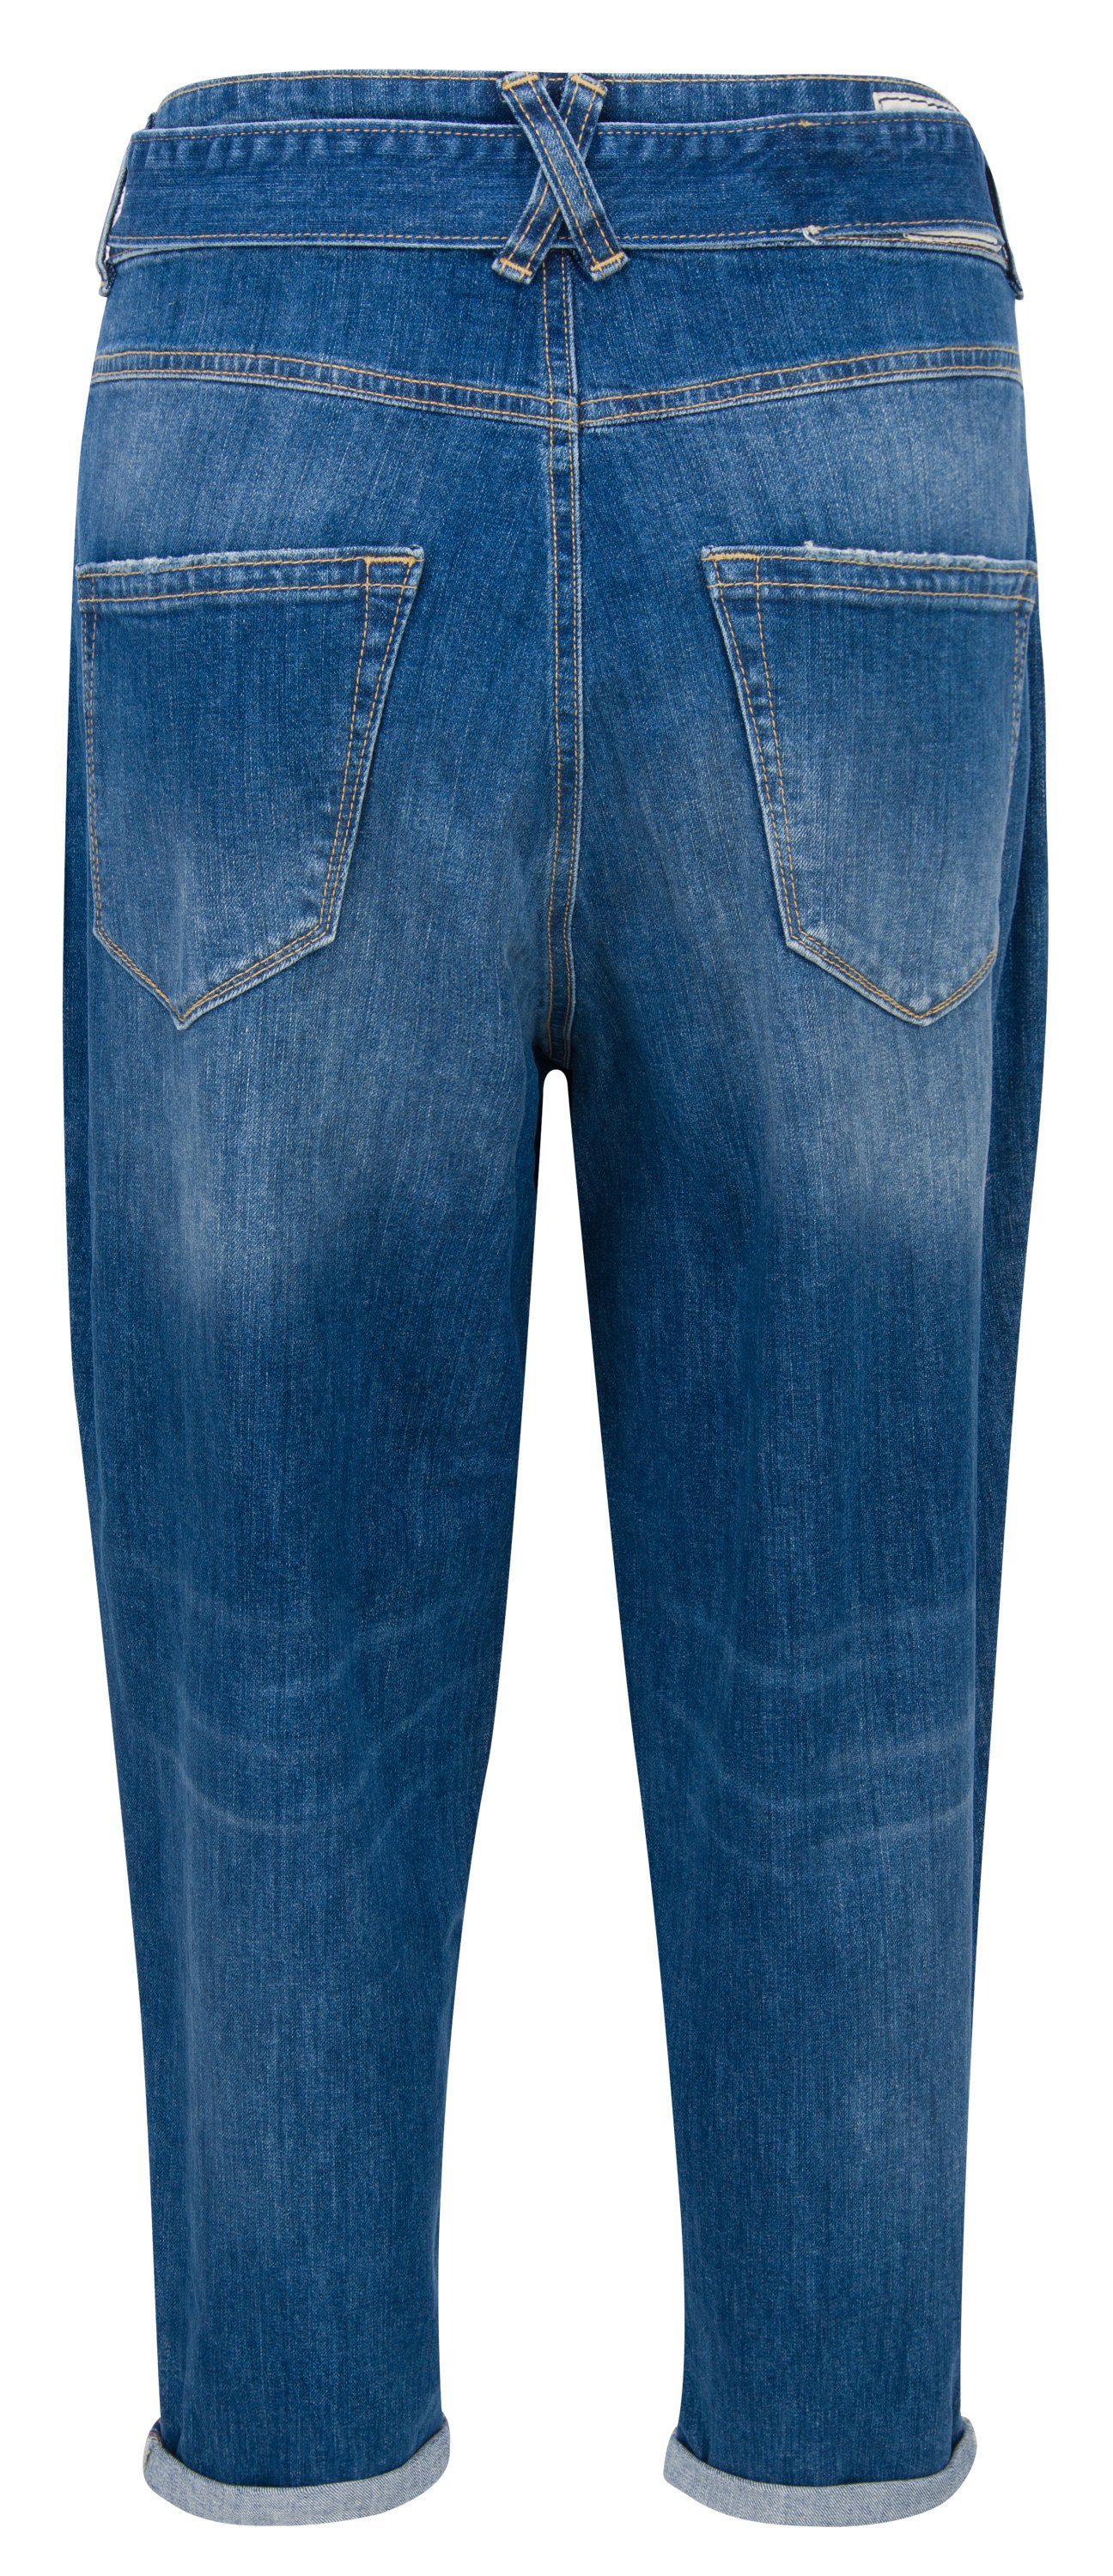 Stretch 5524-D9900-023 Stretch-Jeans HERRLICHER Denim worn Herrlicher KABIRA